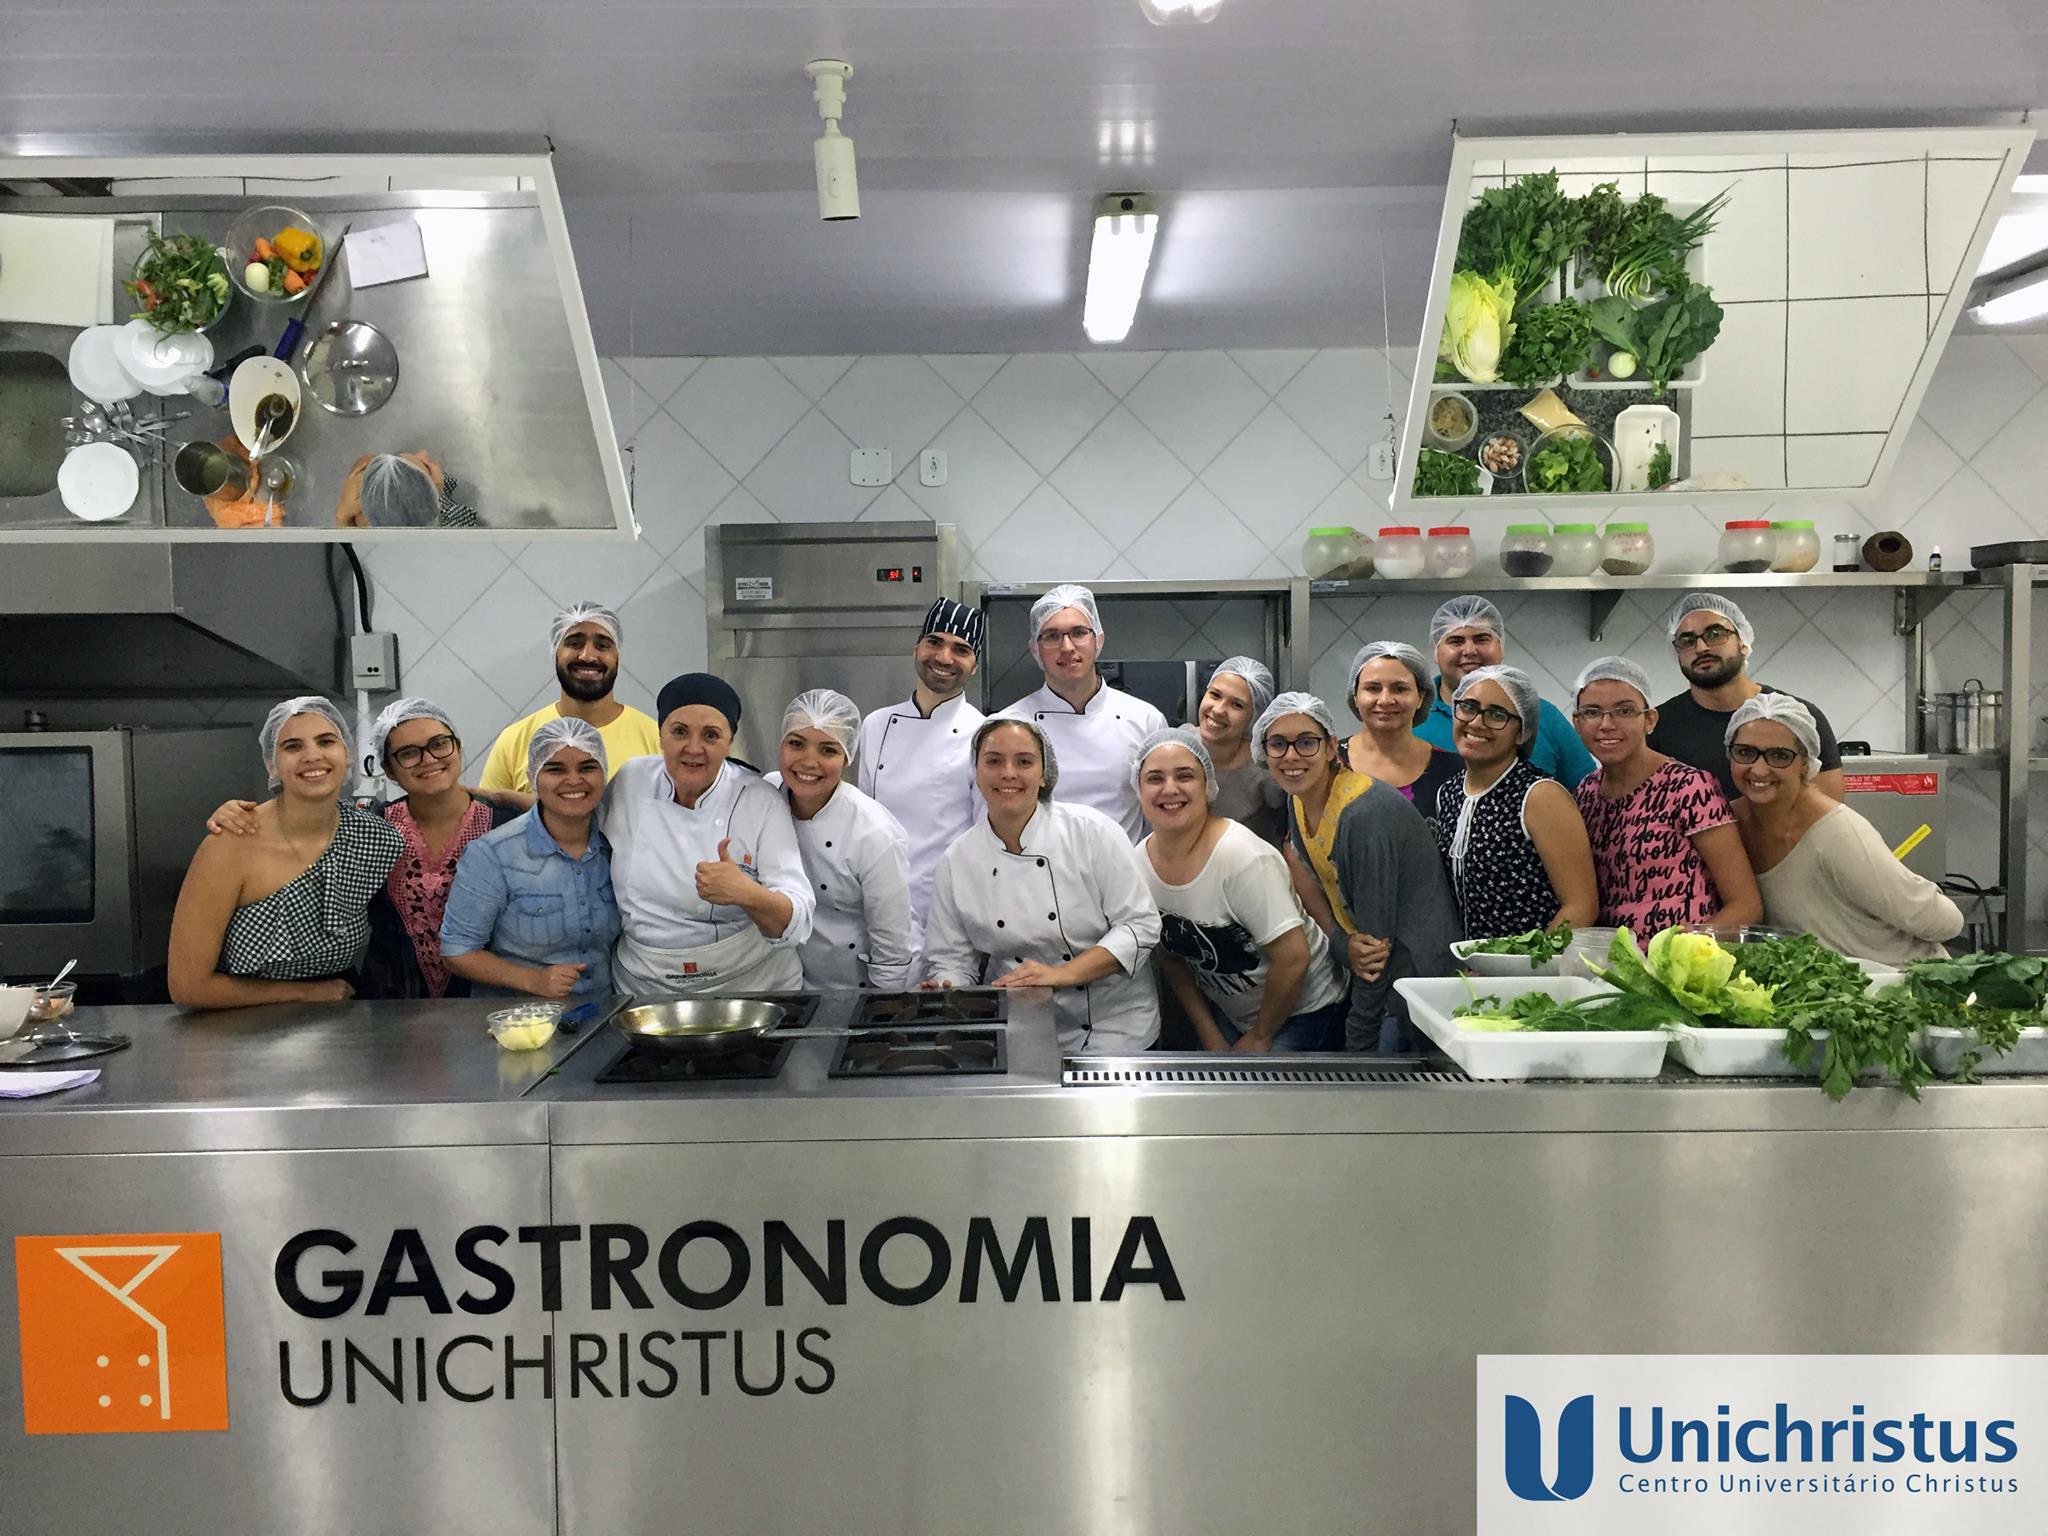 Gastronomia Unichristus